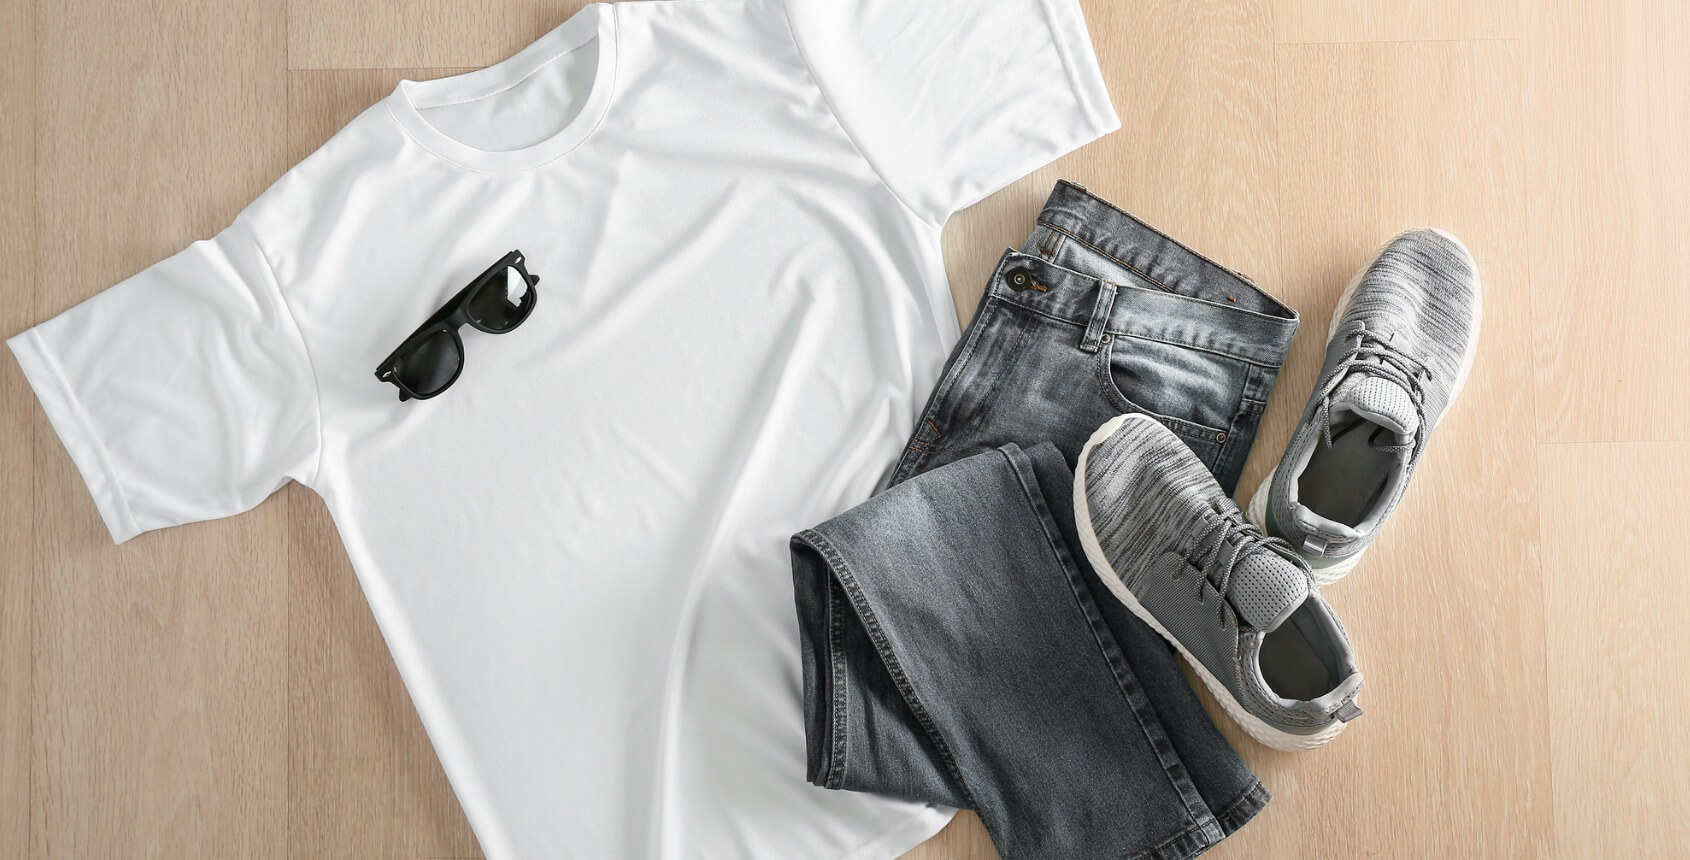 Camisetas marca a de outlet Privé by Zalando